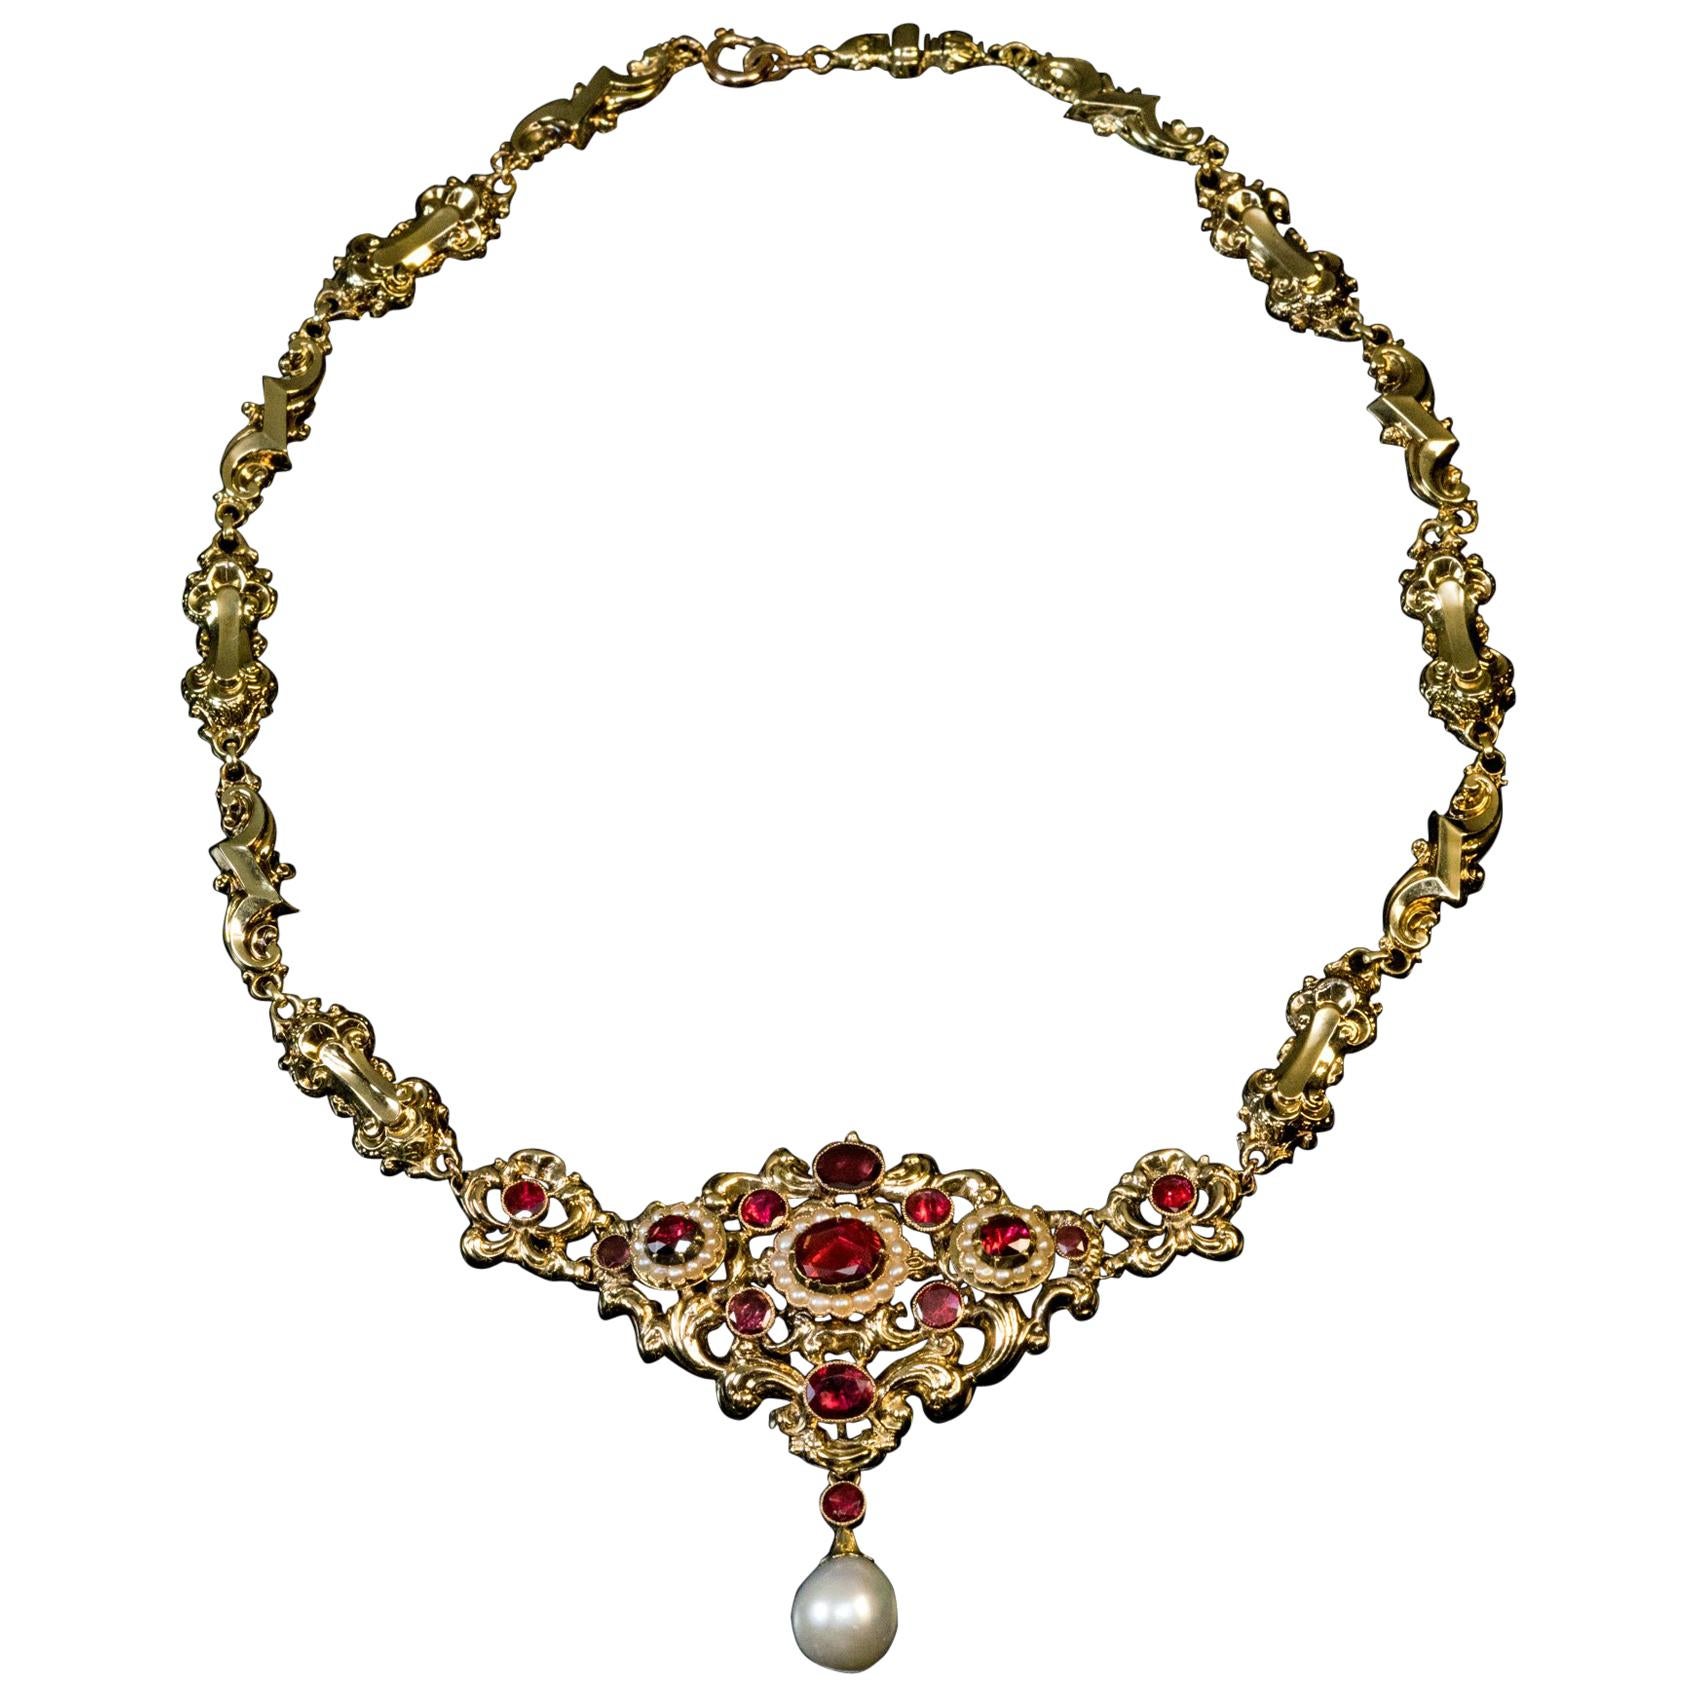 Antique Renaissance Revival Garnet Pearl Gold Necklace For Sale